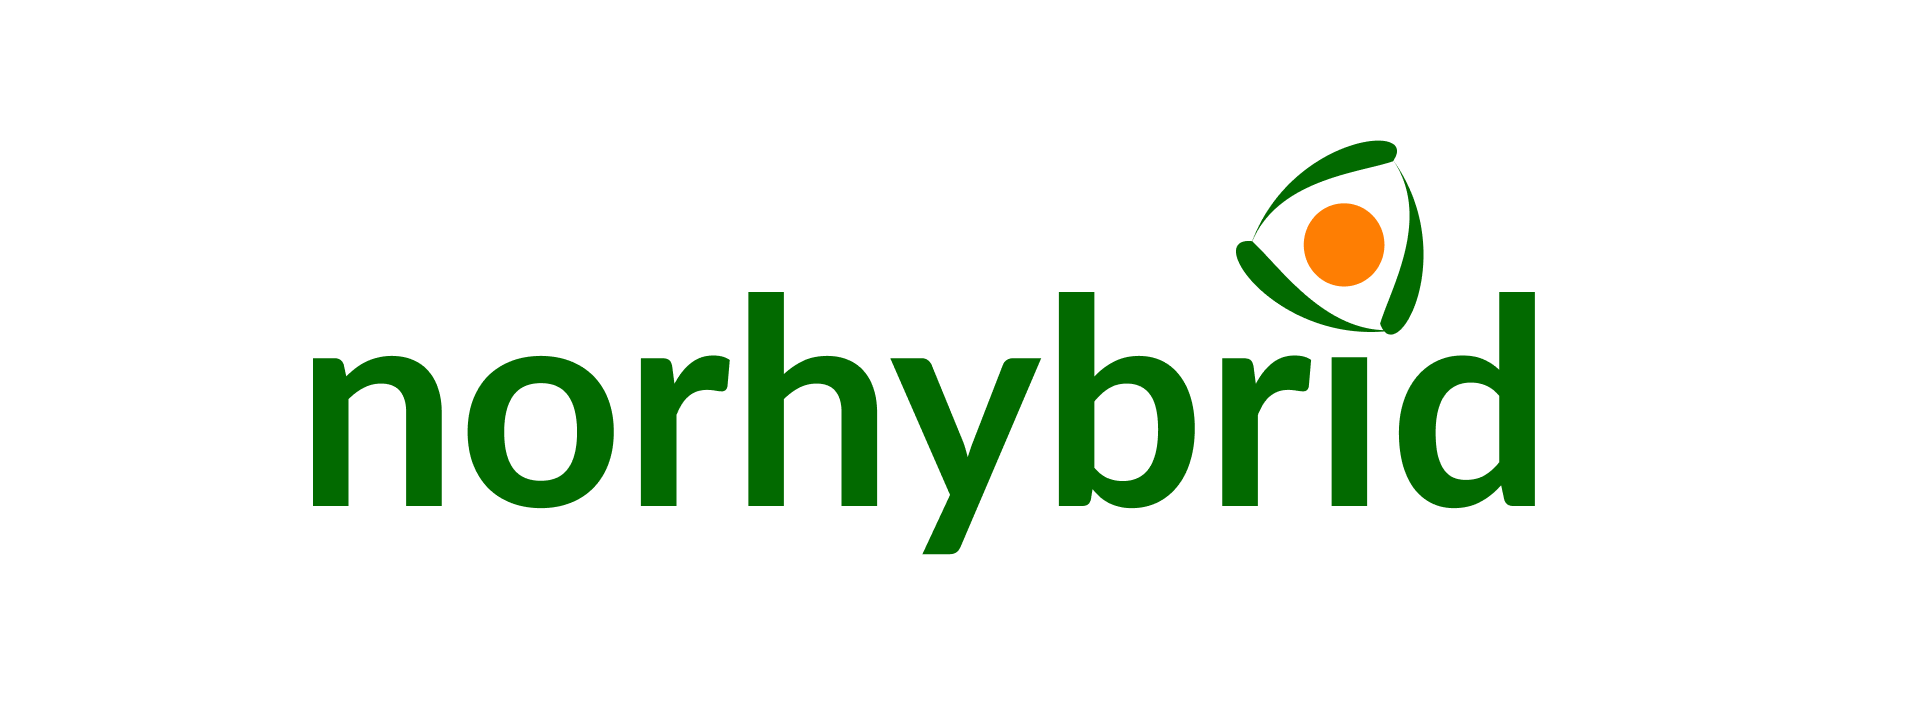 Norhybrid Renewables AS